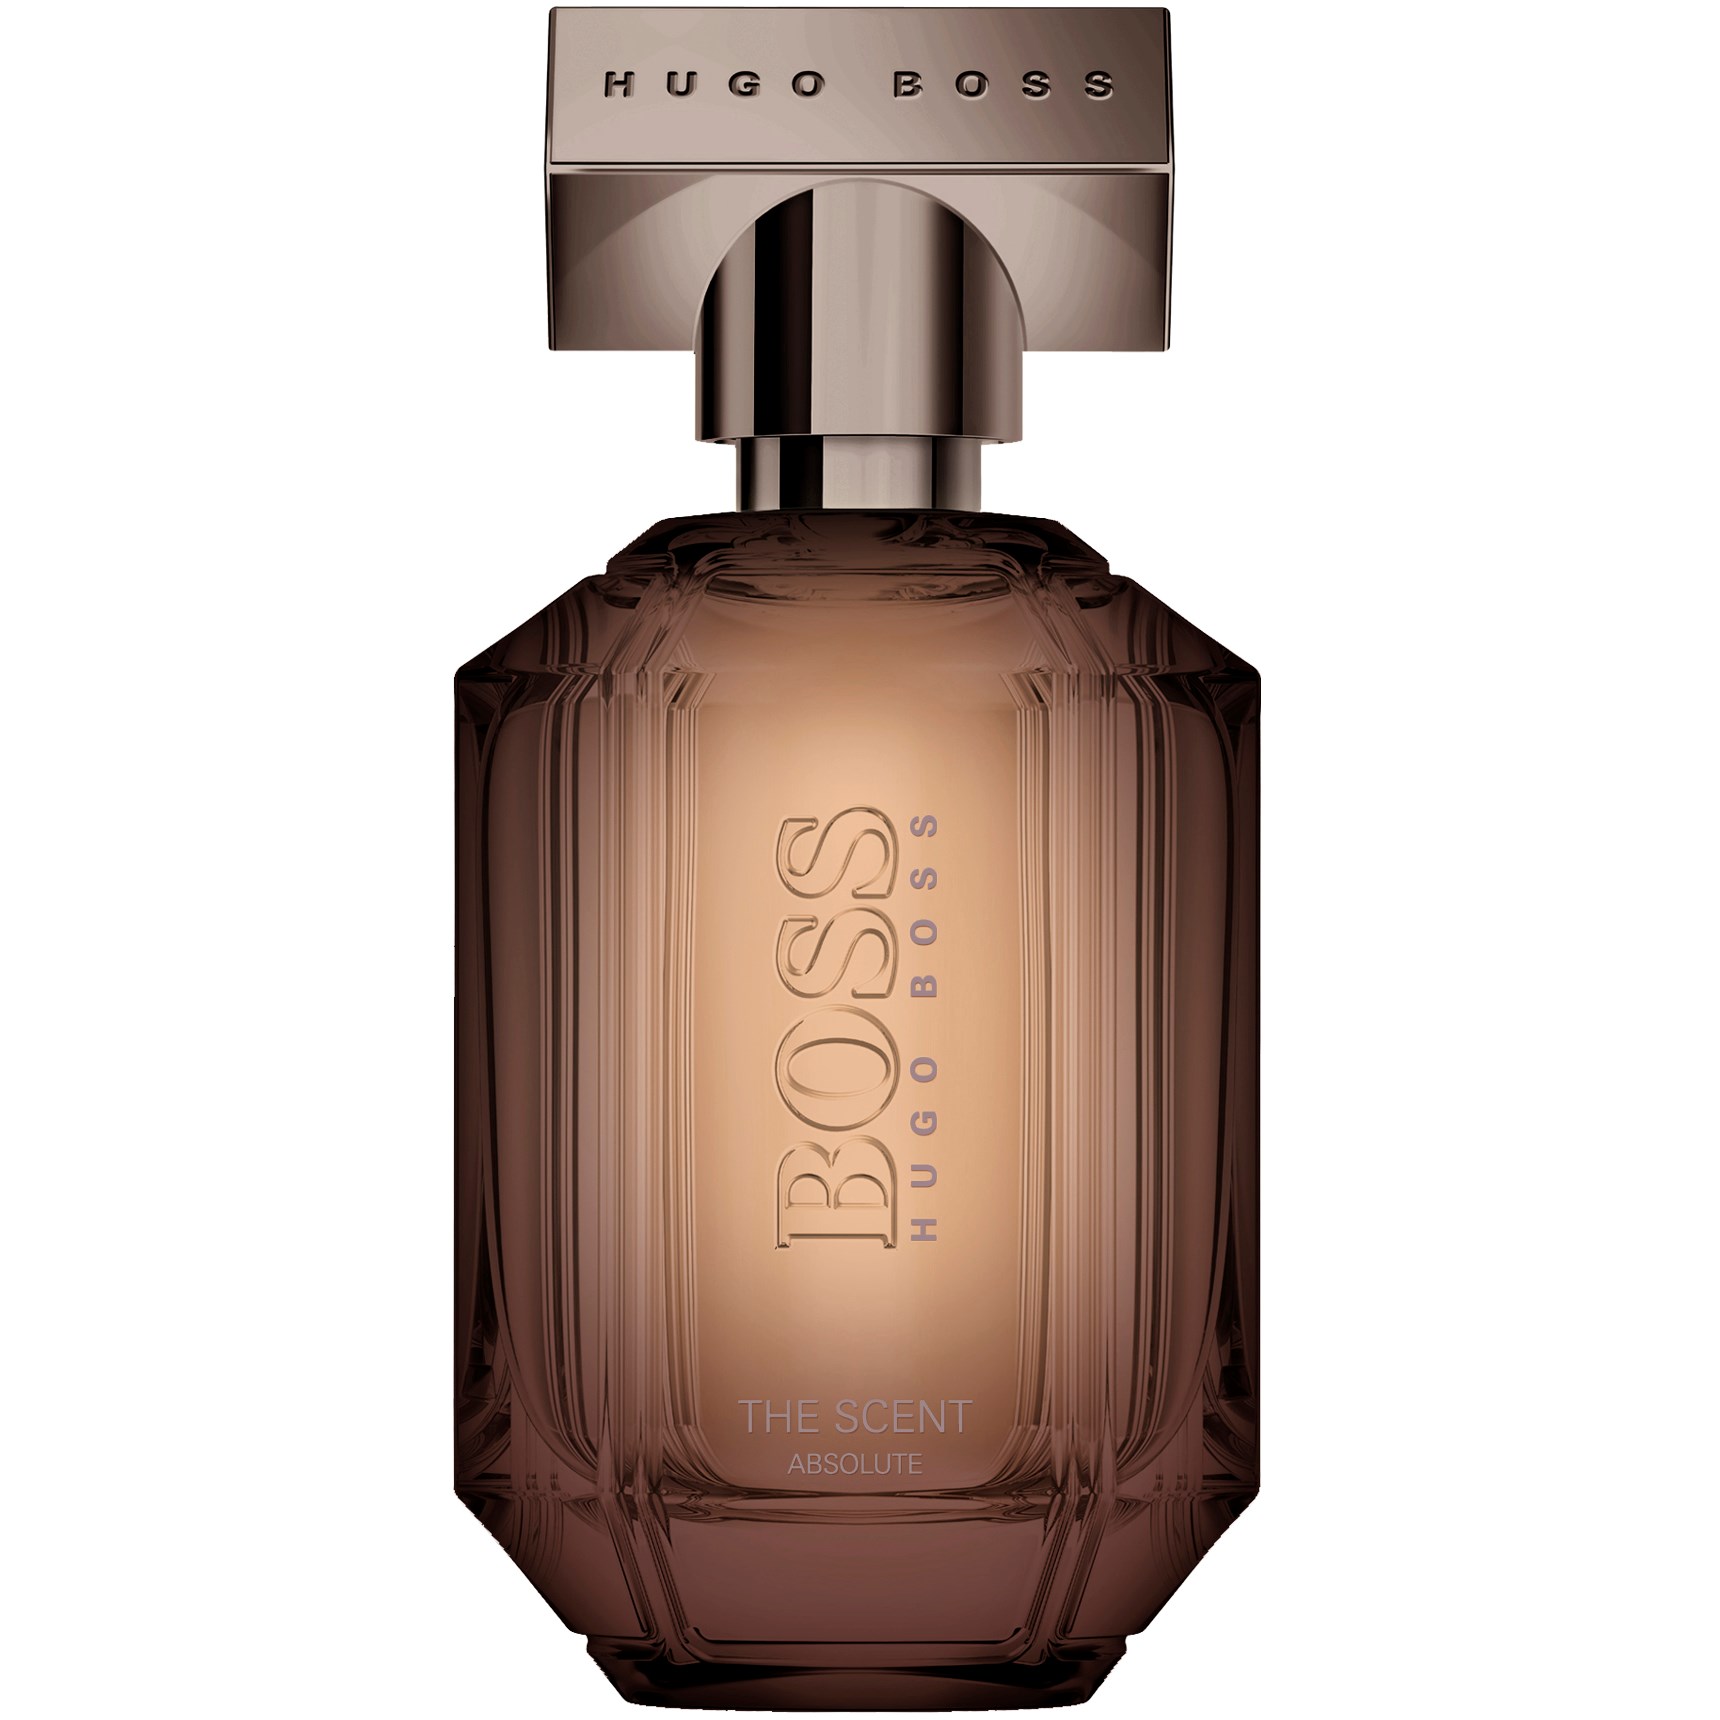 Bouwen op Opnieuw schieten Associëren De 10 beste Hugo Boss parfums voor dames